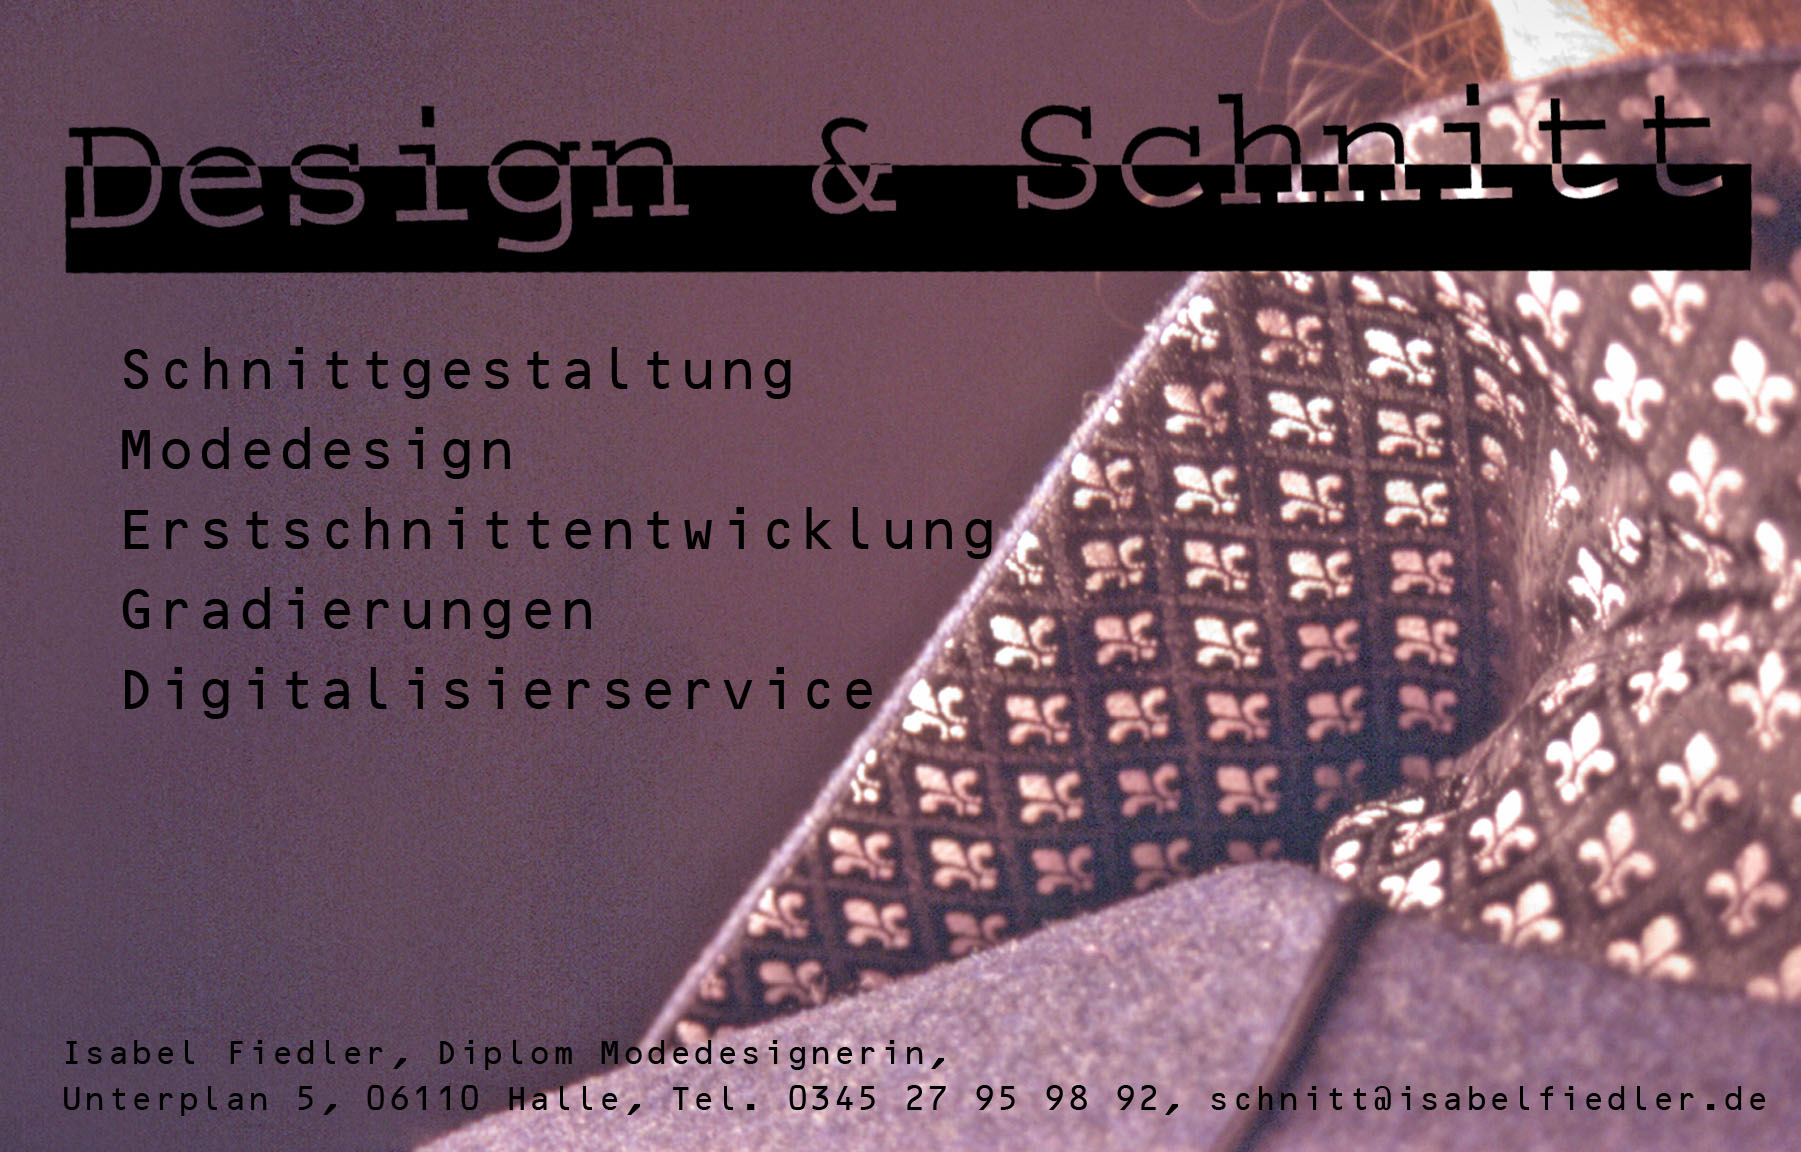 Schnitt und Design Isabel Fiedler